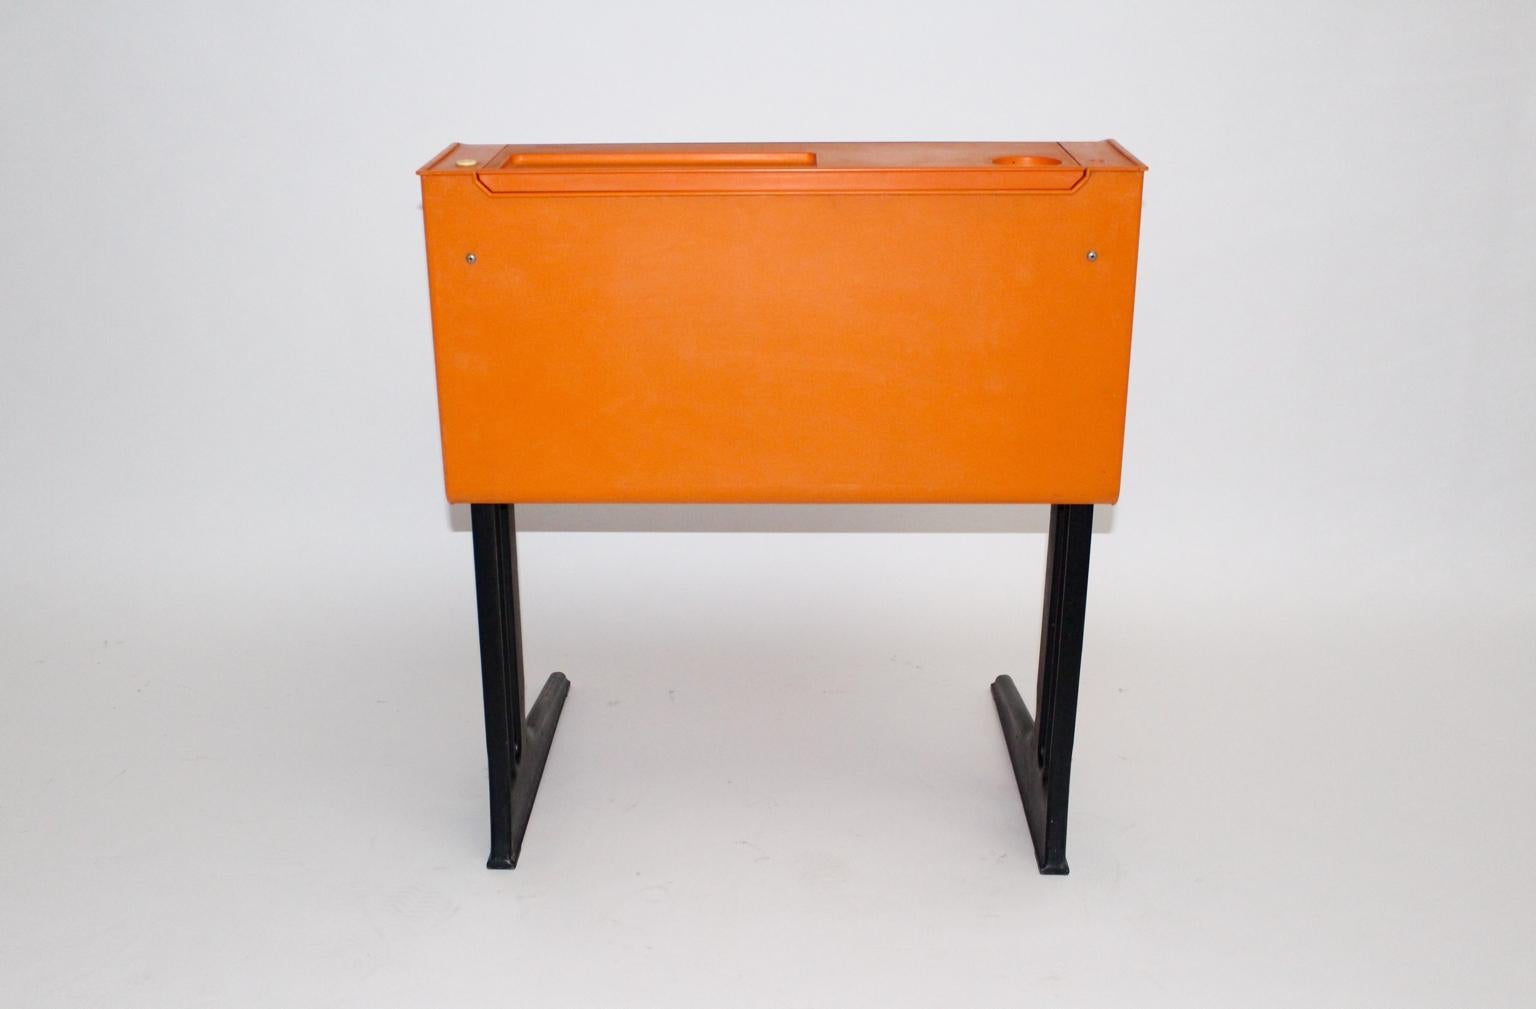 Space Age Oranger Kunststoff-Schreibtisch für Kinder von Luigi Colani, Deutschland, um 1970 1